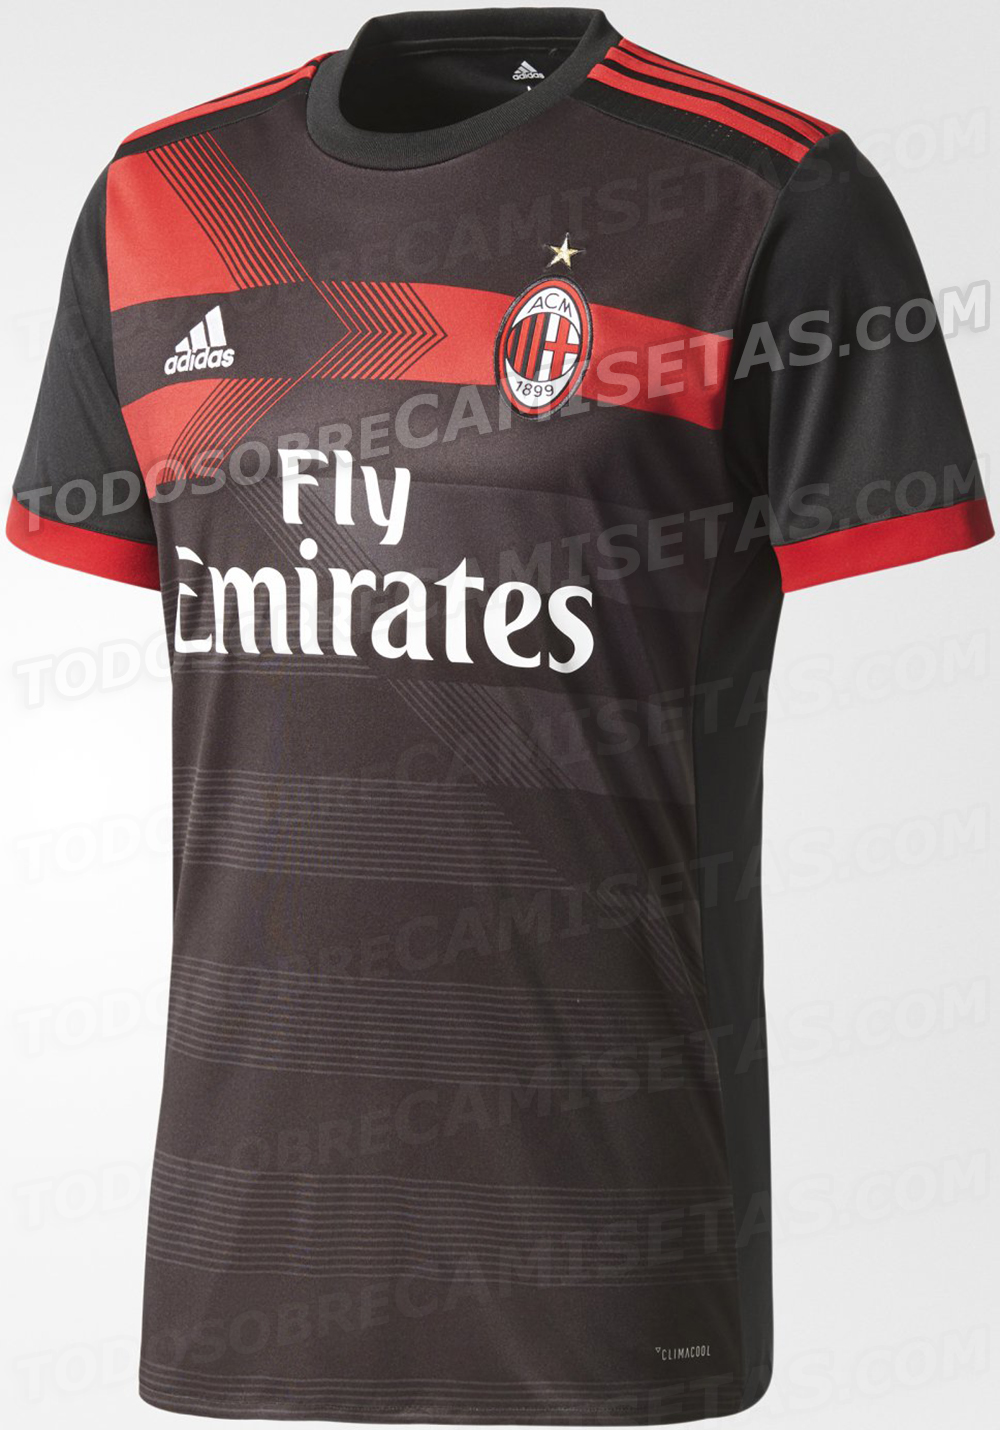 AC Milan 2017-18 adidas third kit LEAKED